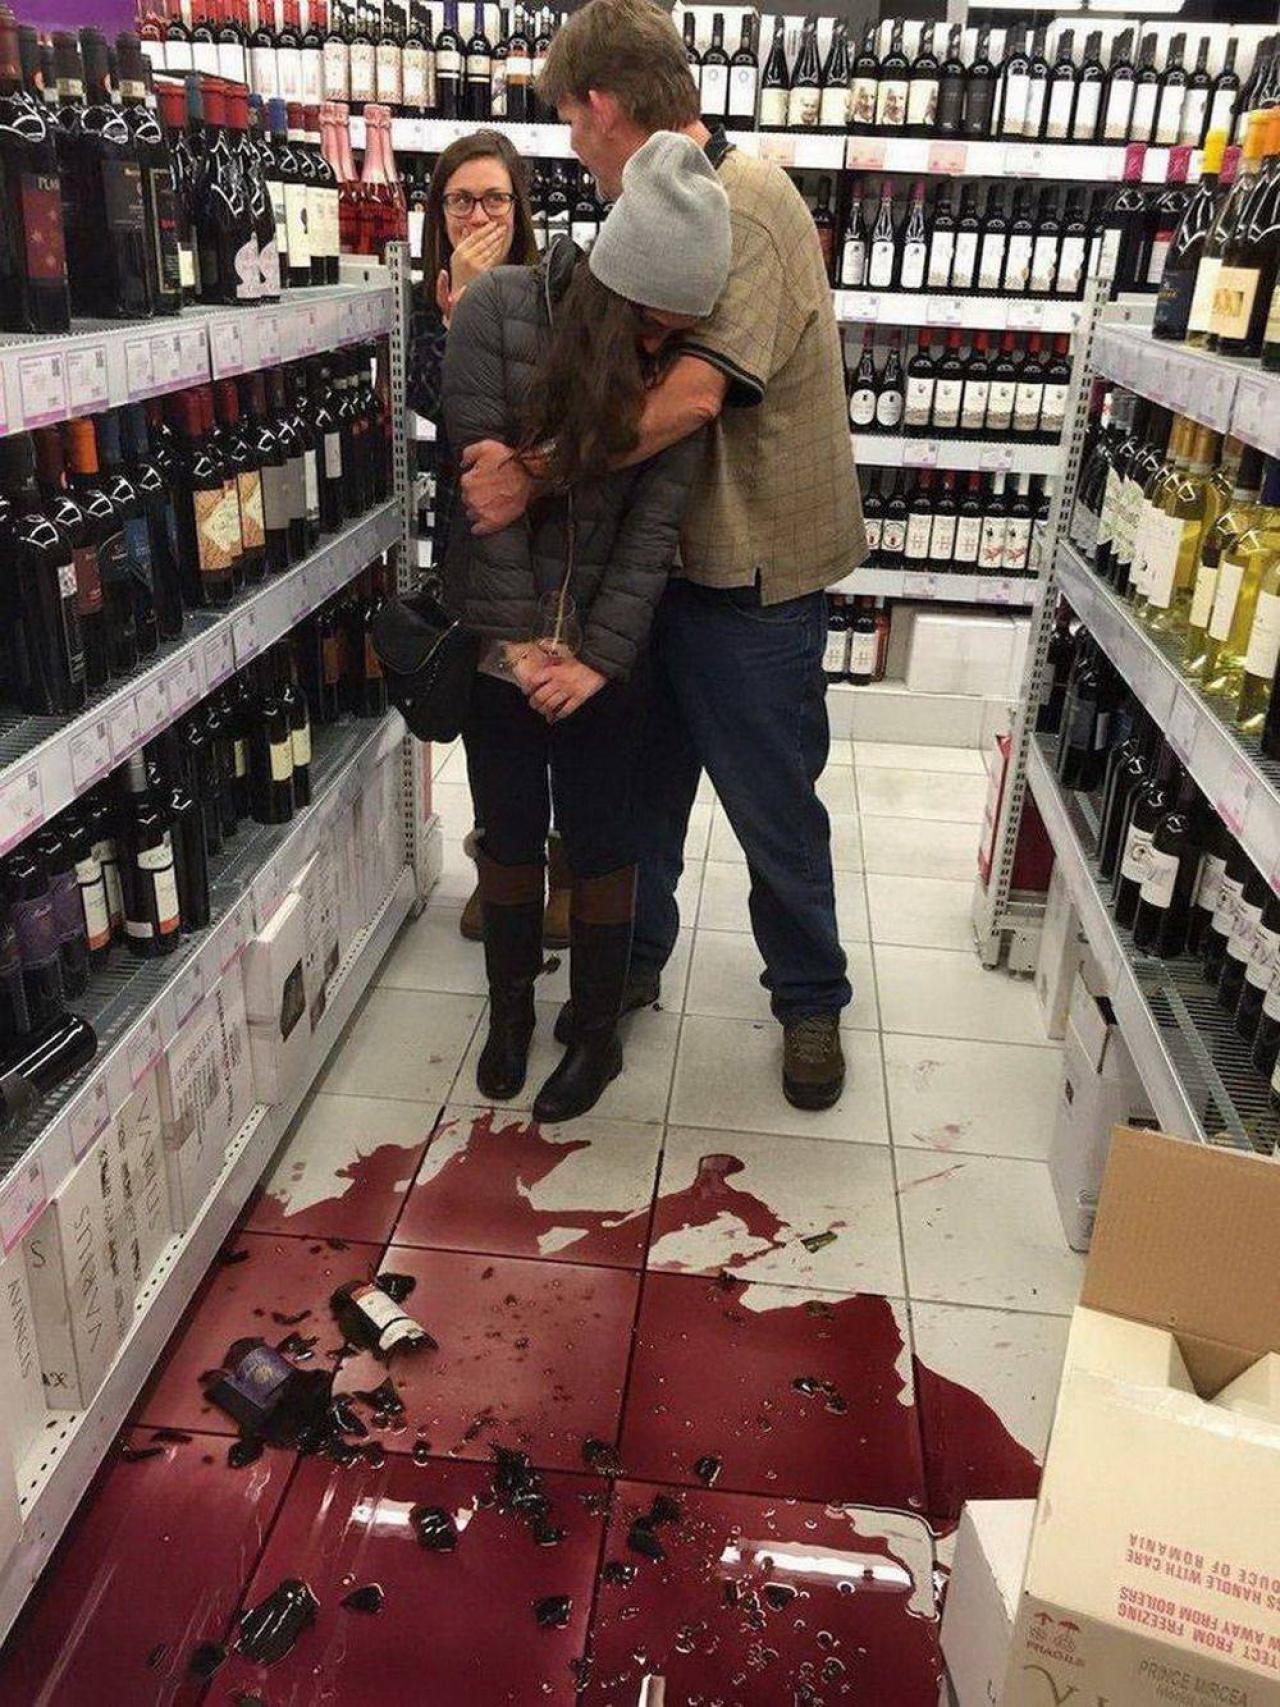 Разбитые бутылки в магазине. Разбитые бутылки вина в магазине.